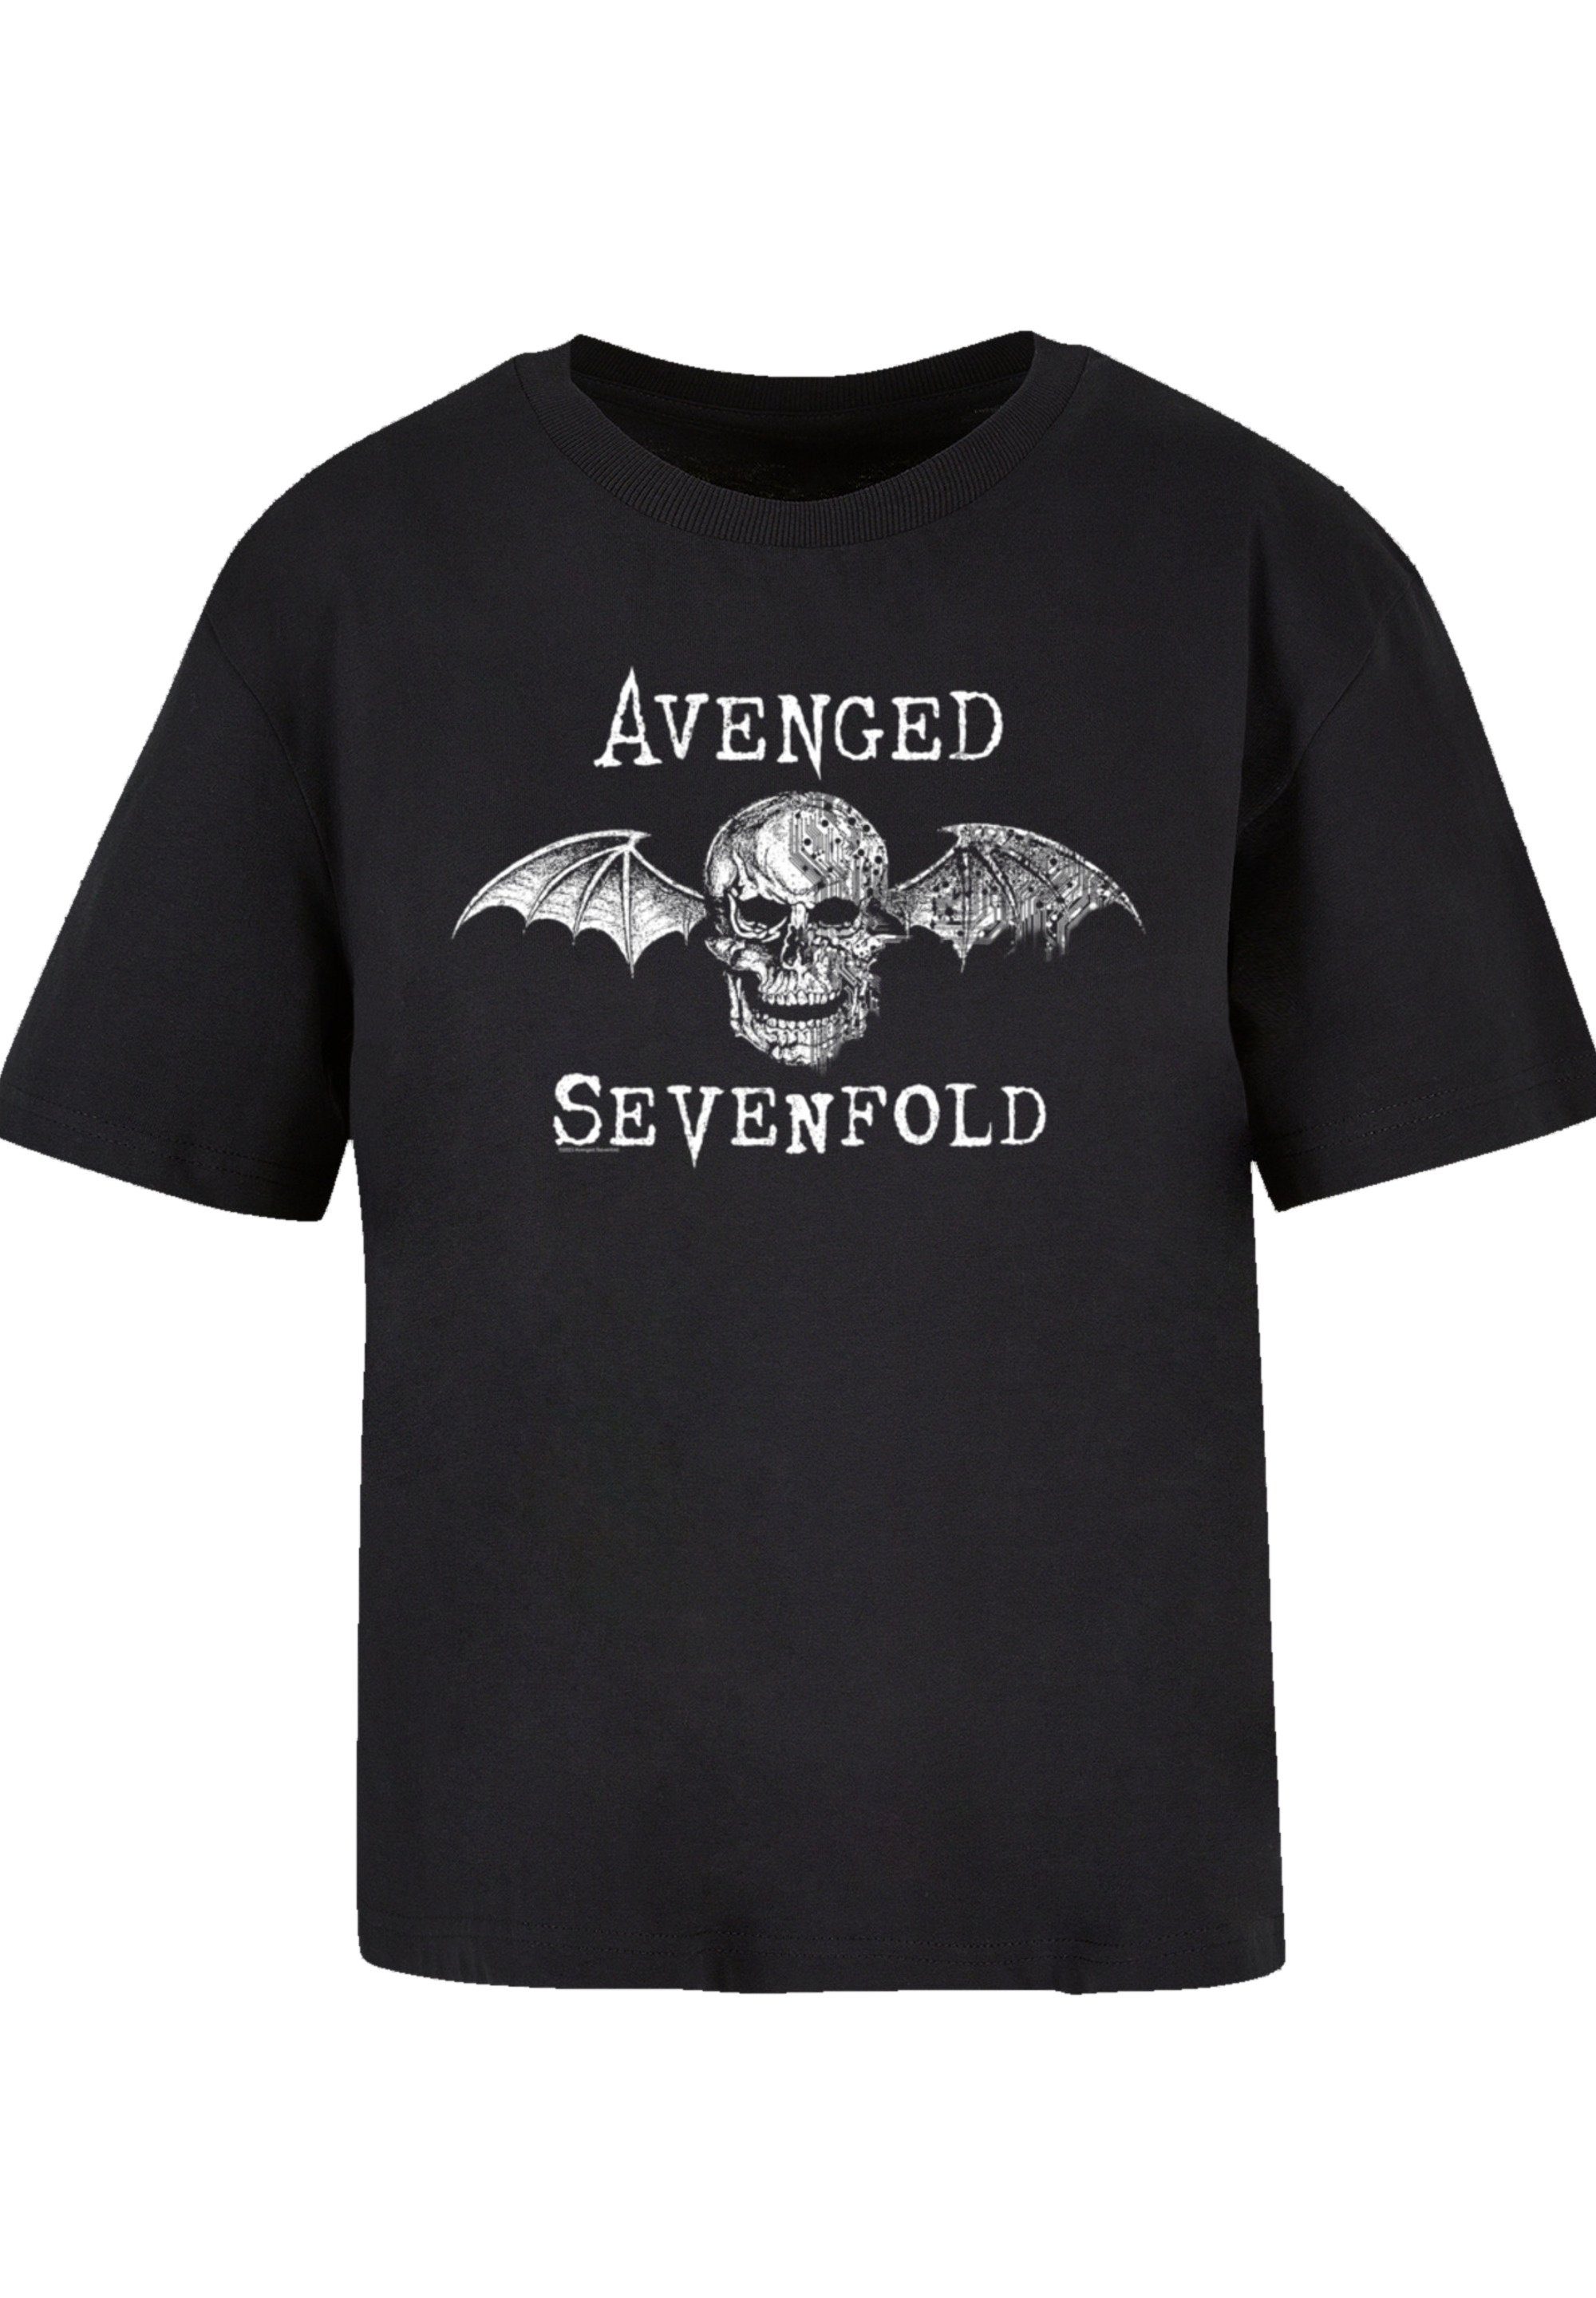 F4NT4STIC T-Shirt Avenged Sevenfold Rock Metal Band Cyborg Bat Premium  Qualität, Band, Rock-Musik, Offiziell lizenziertes Avenged Sevenfold T-Shirt